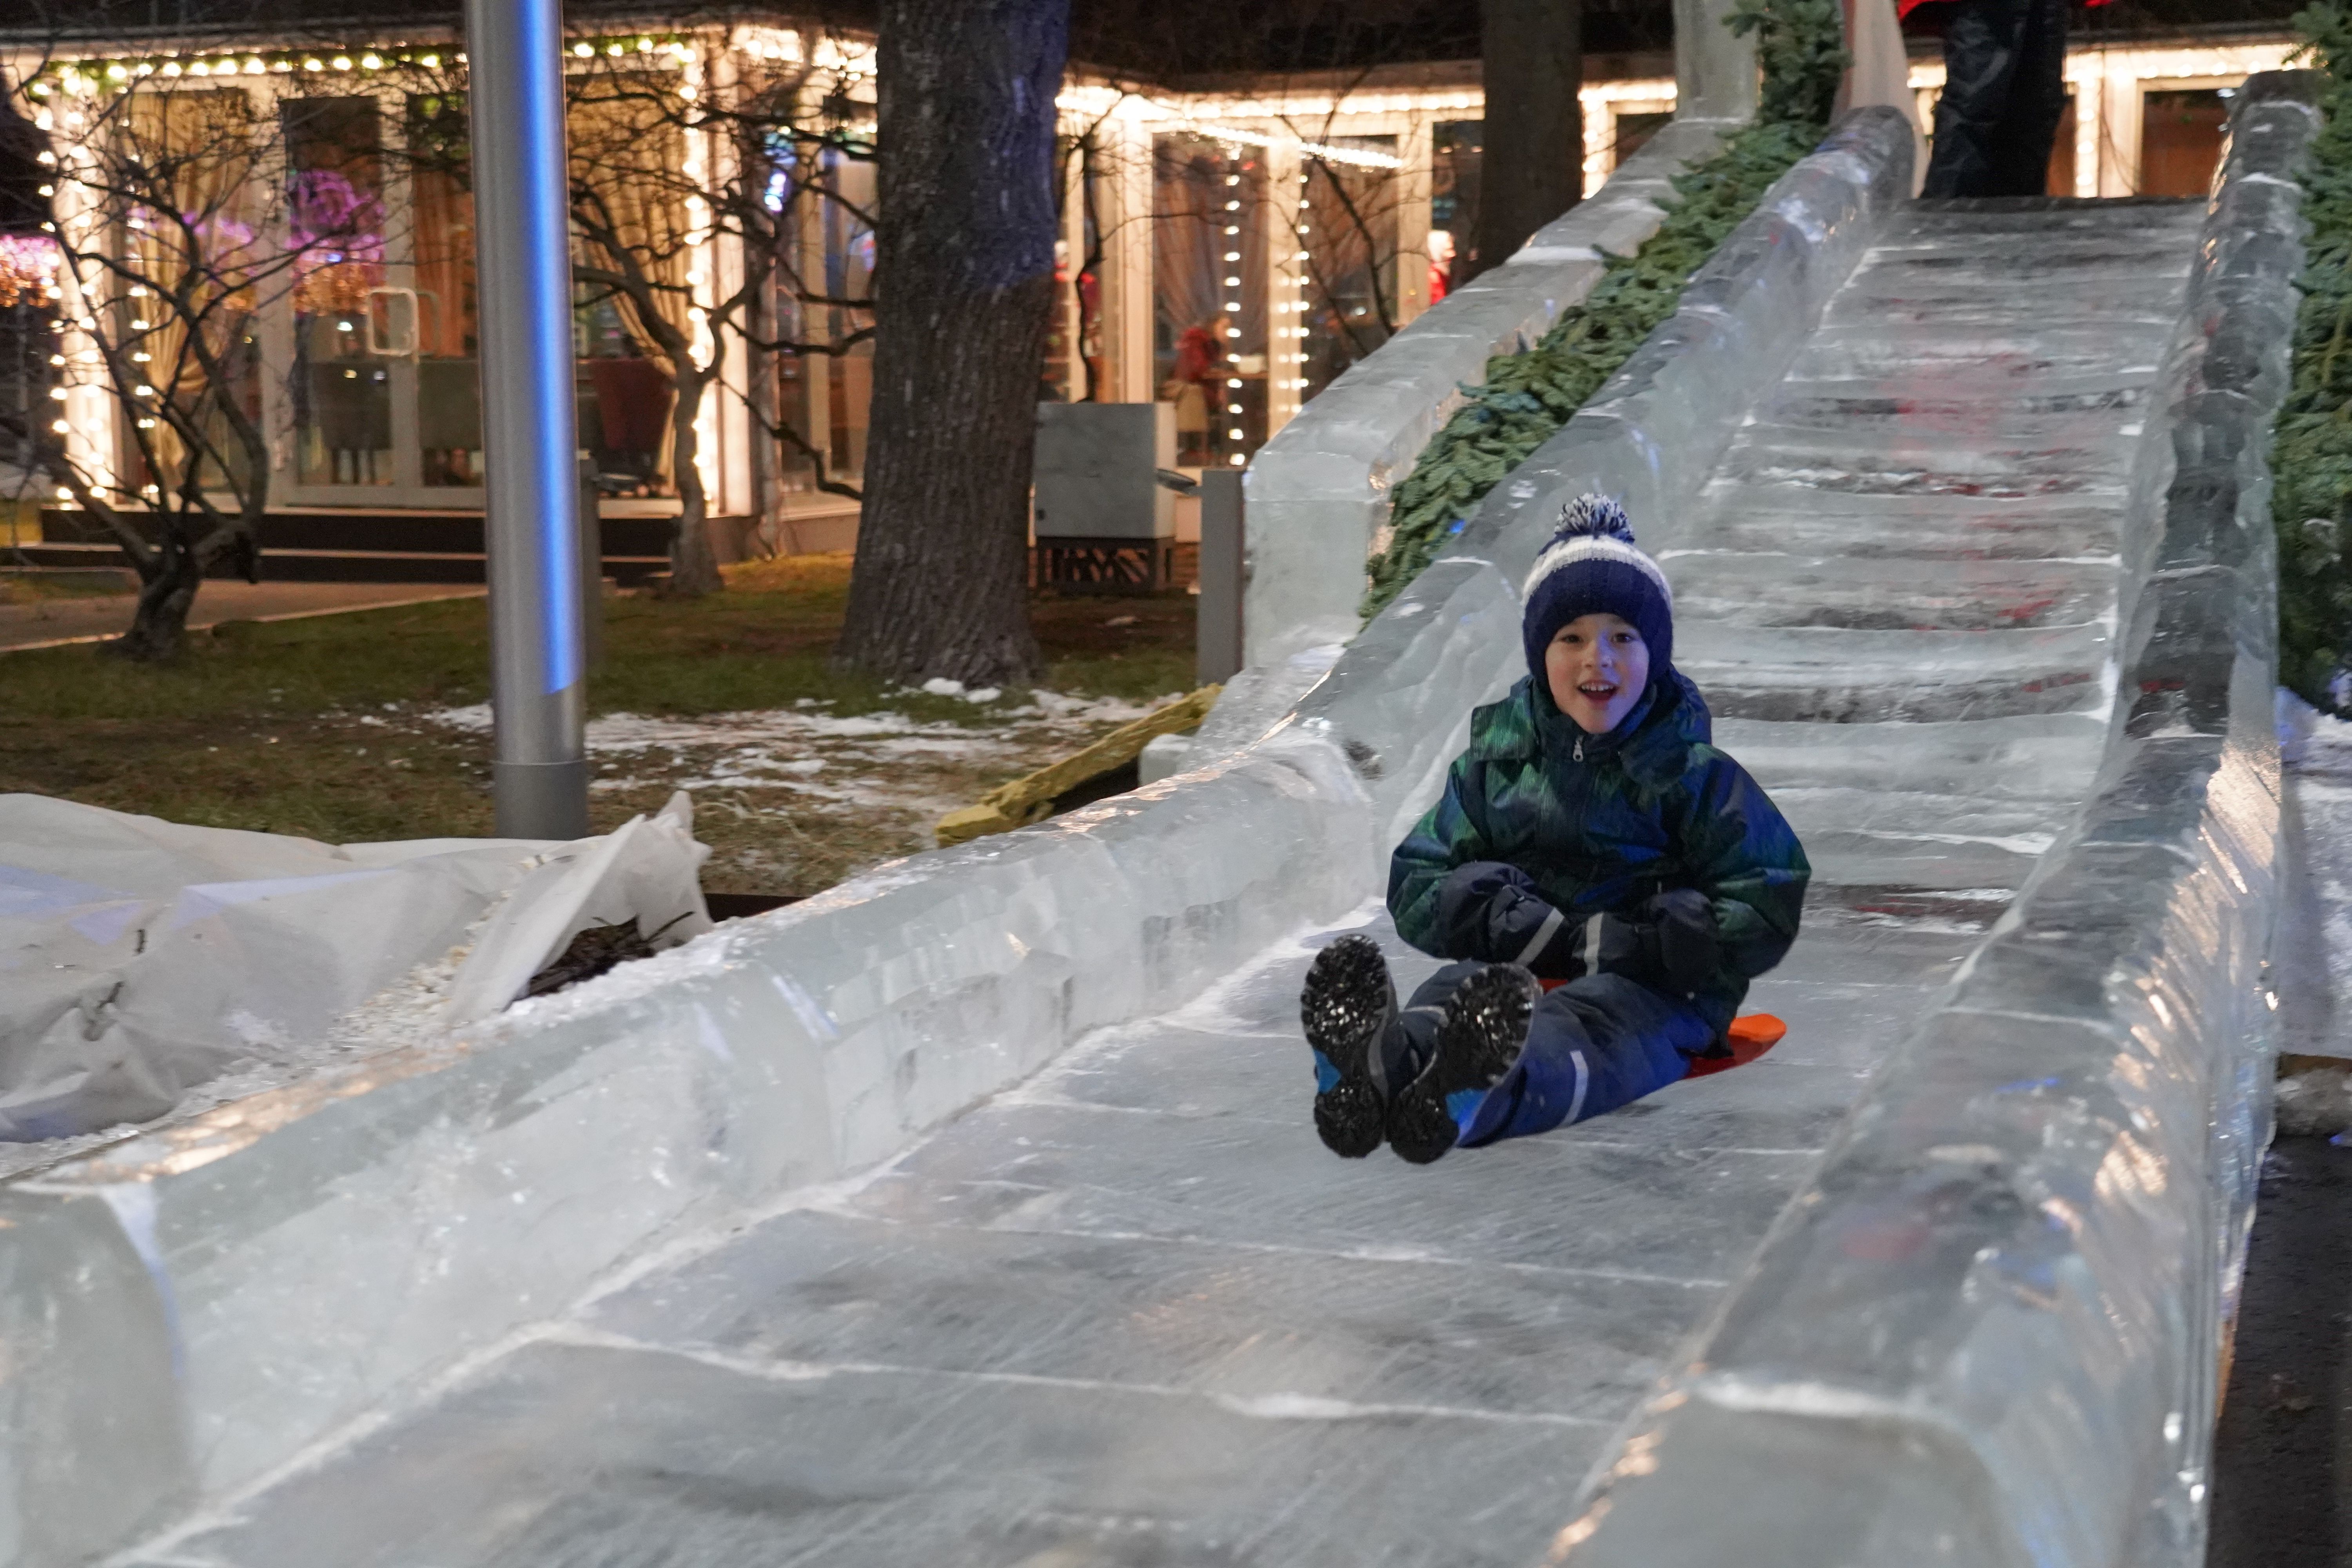 21 декабря 2019 года. Марату Андрохову очень понравилось кататься с первой в столице ледяной горки на зимнем спортивном празднике в Лужниках